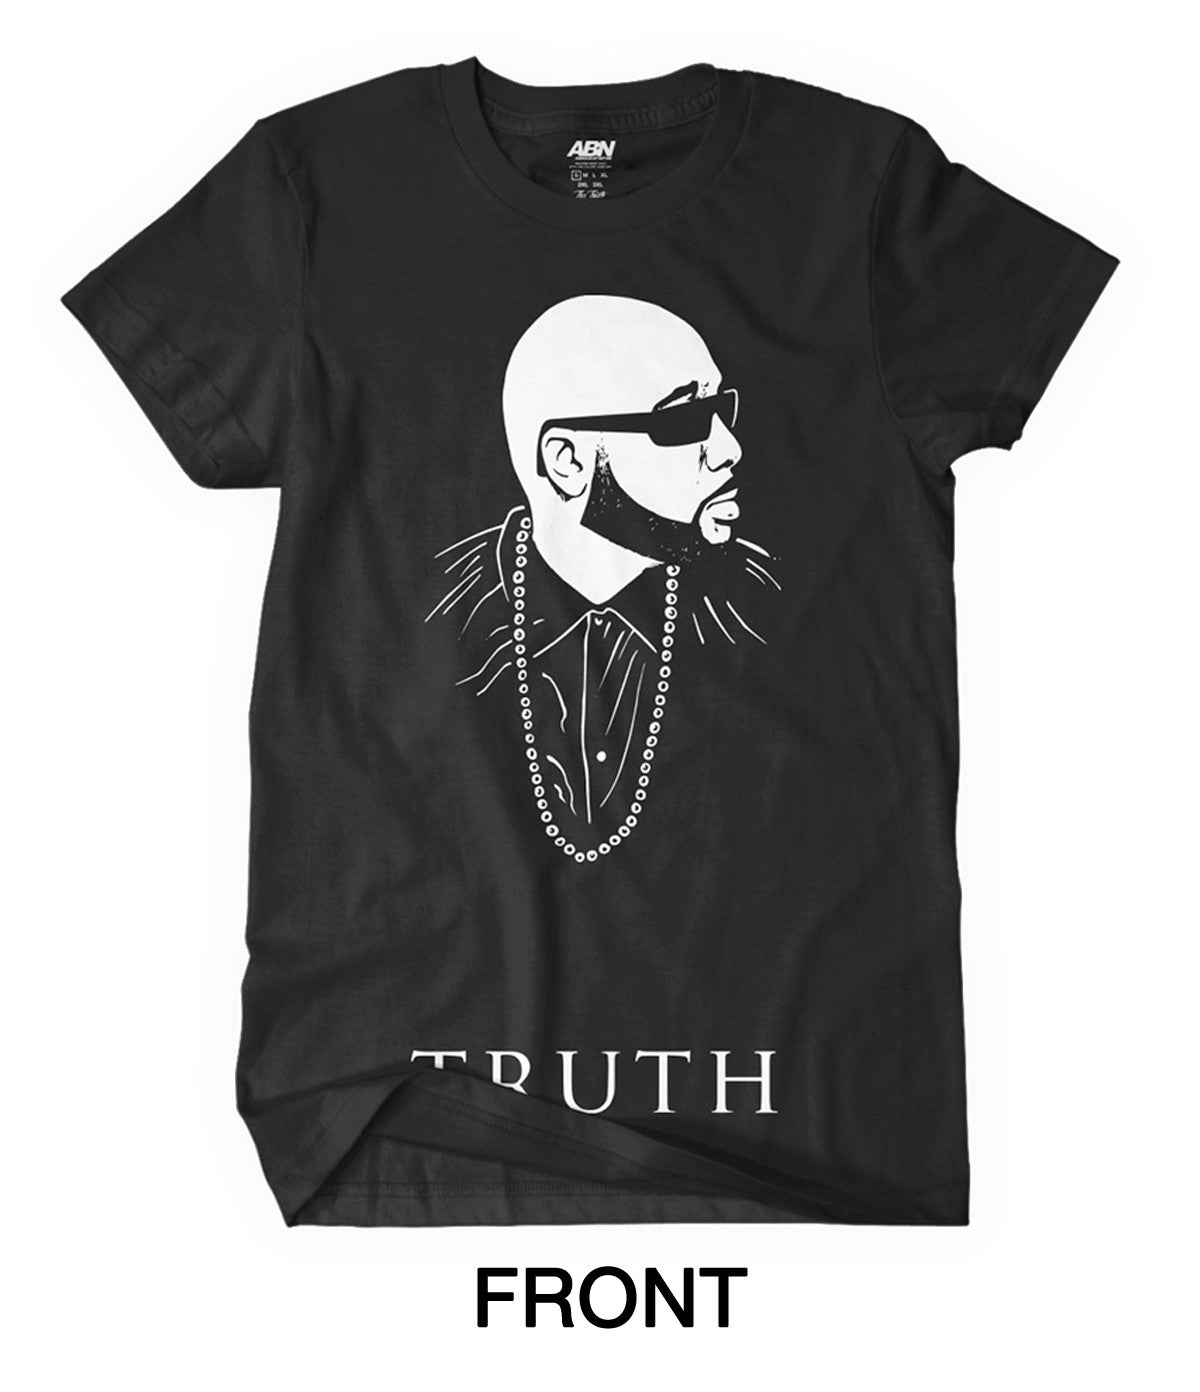 Trae Tha Truth - "Tha Truth" CD + T-Shirt Bundle